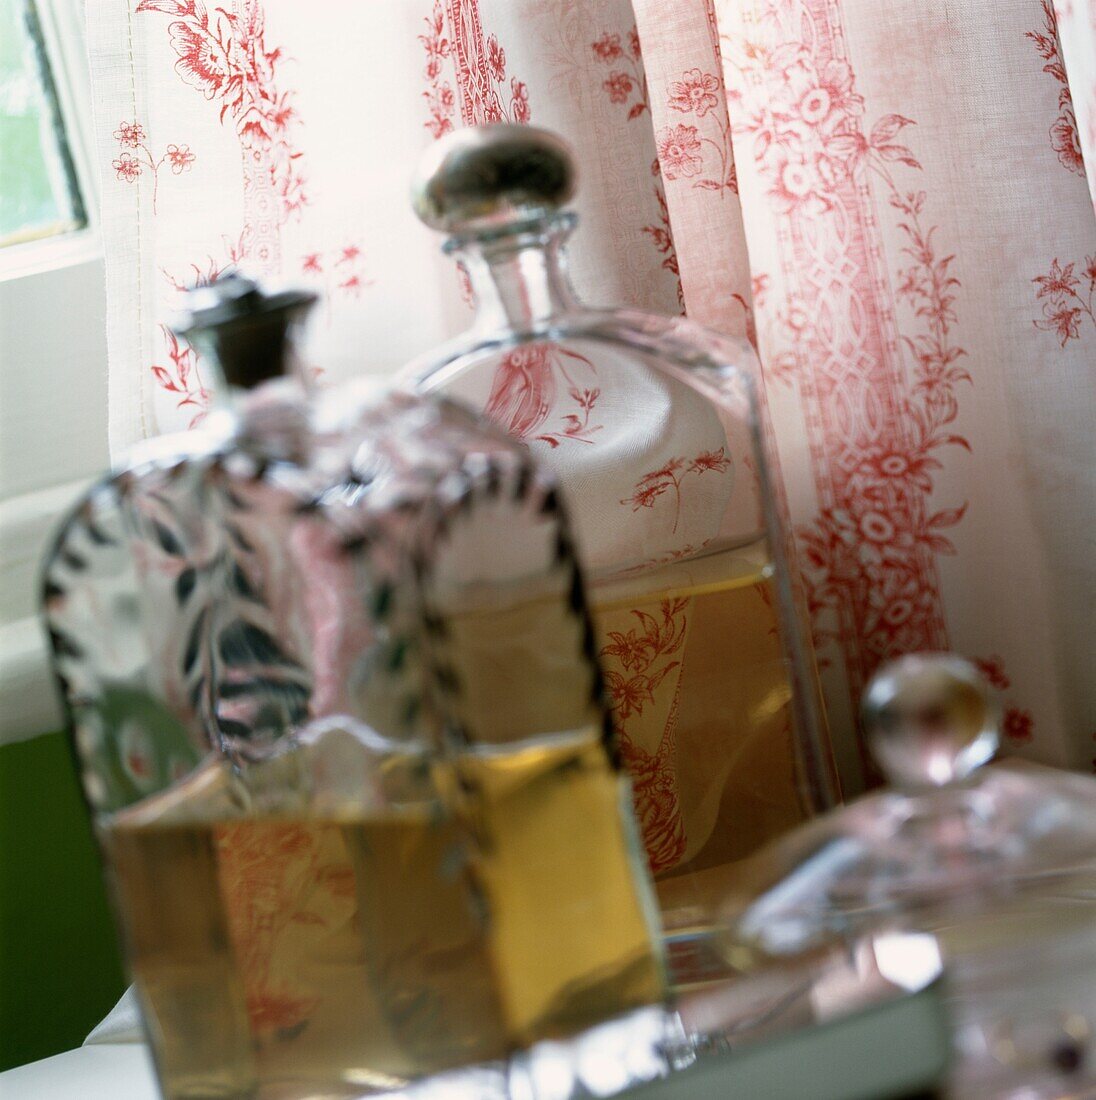 Parfümflaschen auf der Fensterbank mit blumengemusterten Vorhängen